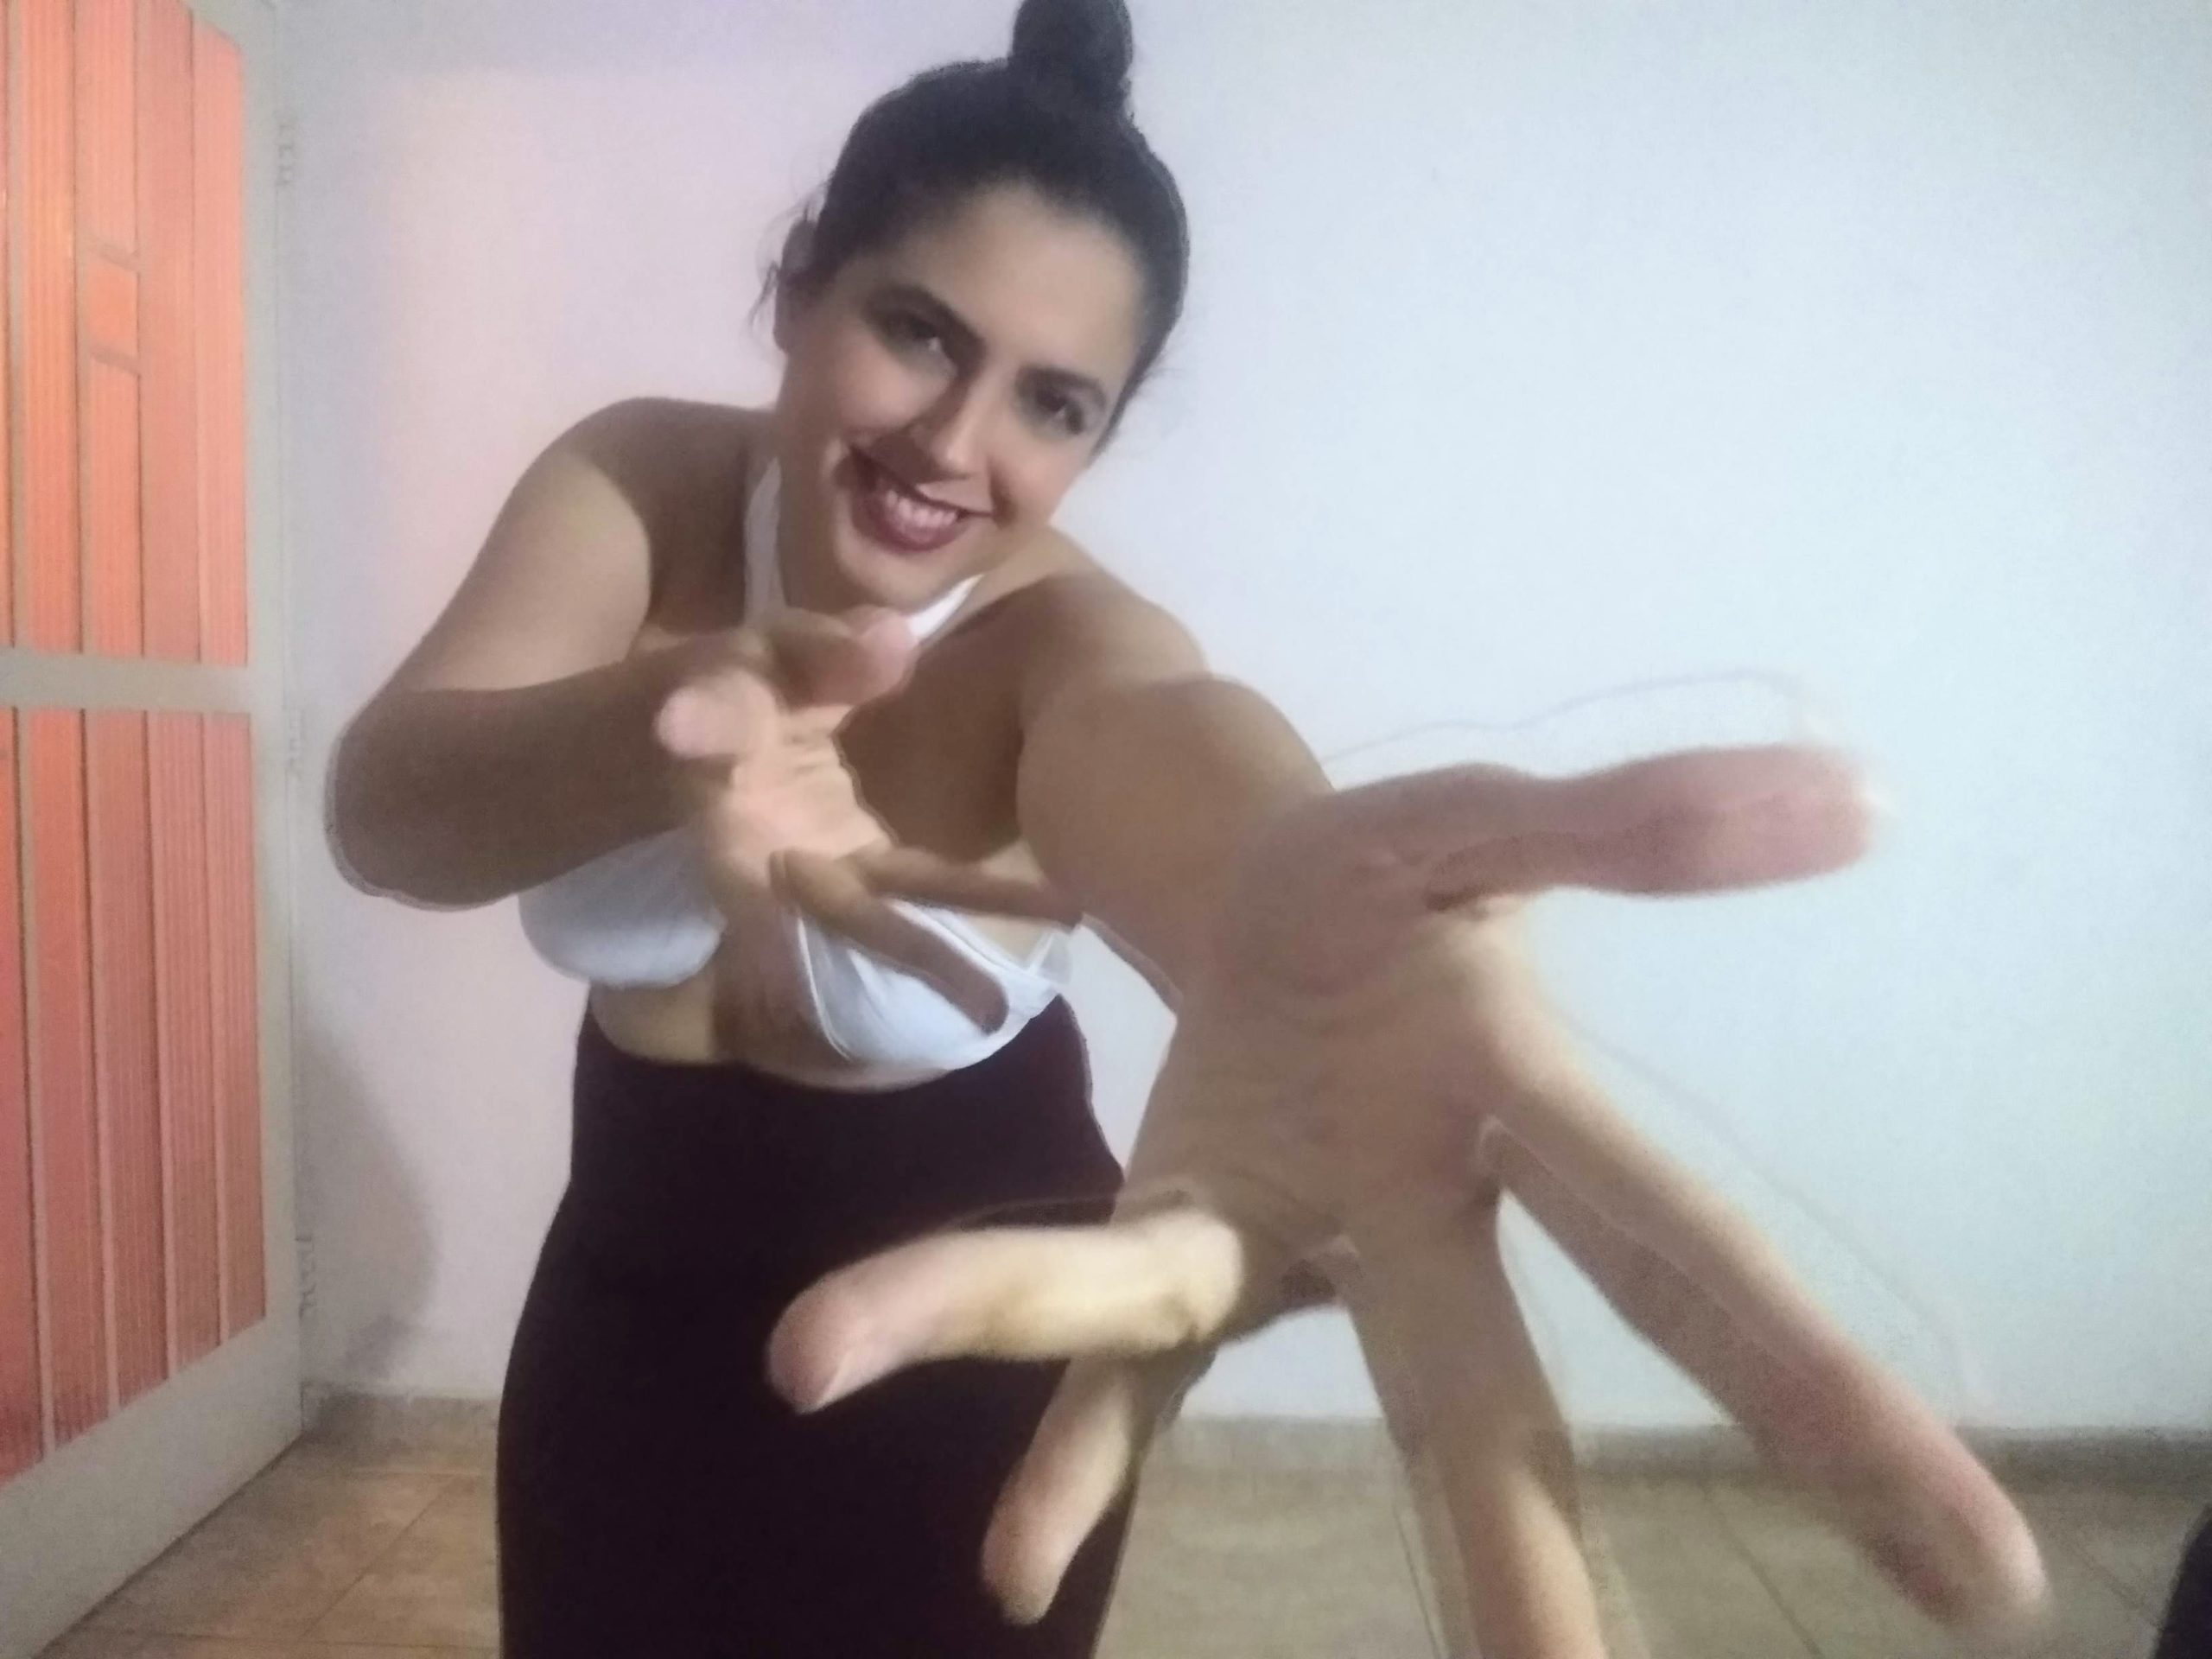 Atriz Camila Ribeiro, em cena do espetáculo "Carta ao meu corpo" (foto: divulgação)